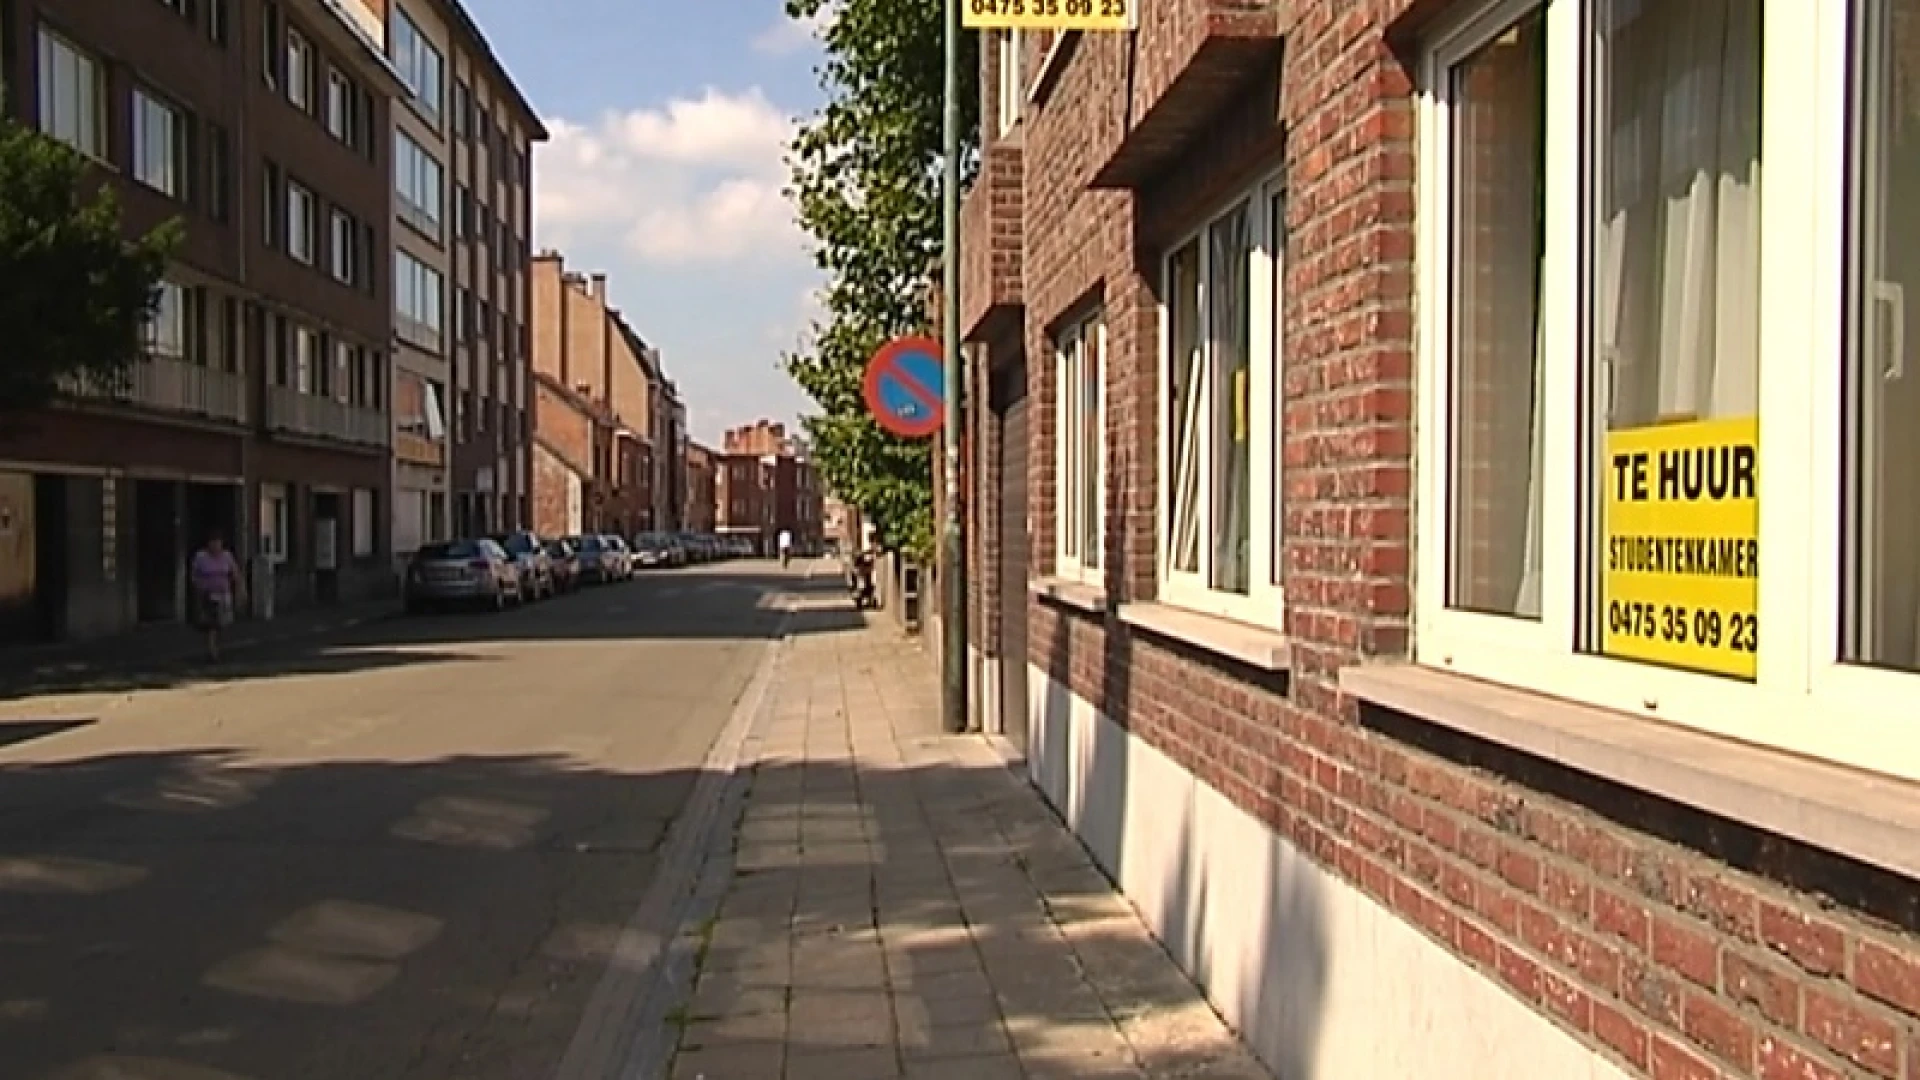 Nog 300-tal koten te huur in Leuven: impact van coronacrisis blijft beperkt